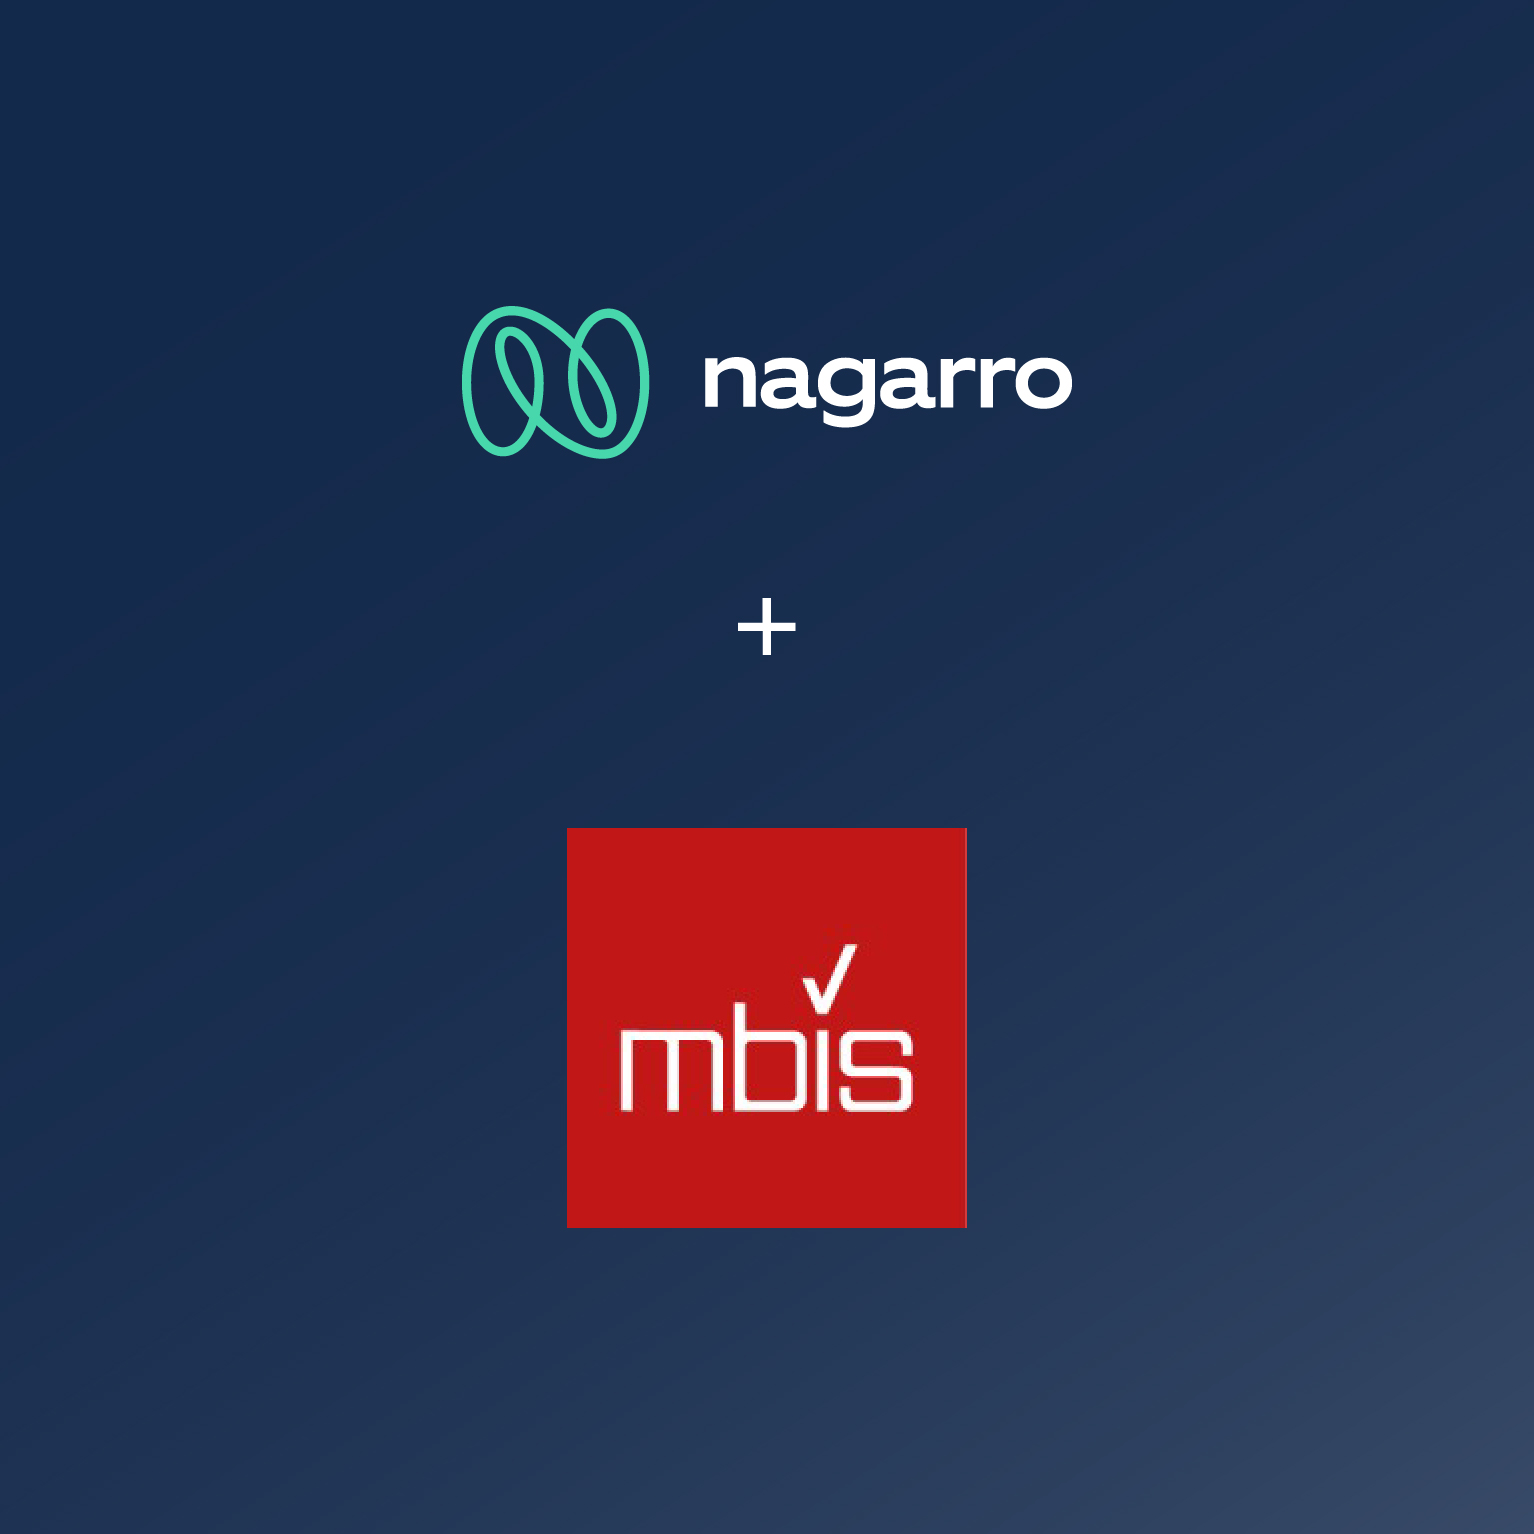 Nagarro erweitert mit der Übernahme von MBIS seine Geschäftsfelder und SAP-Kompetenzen